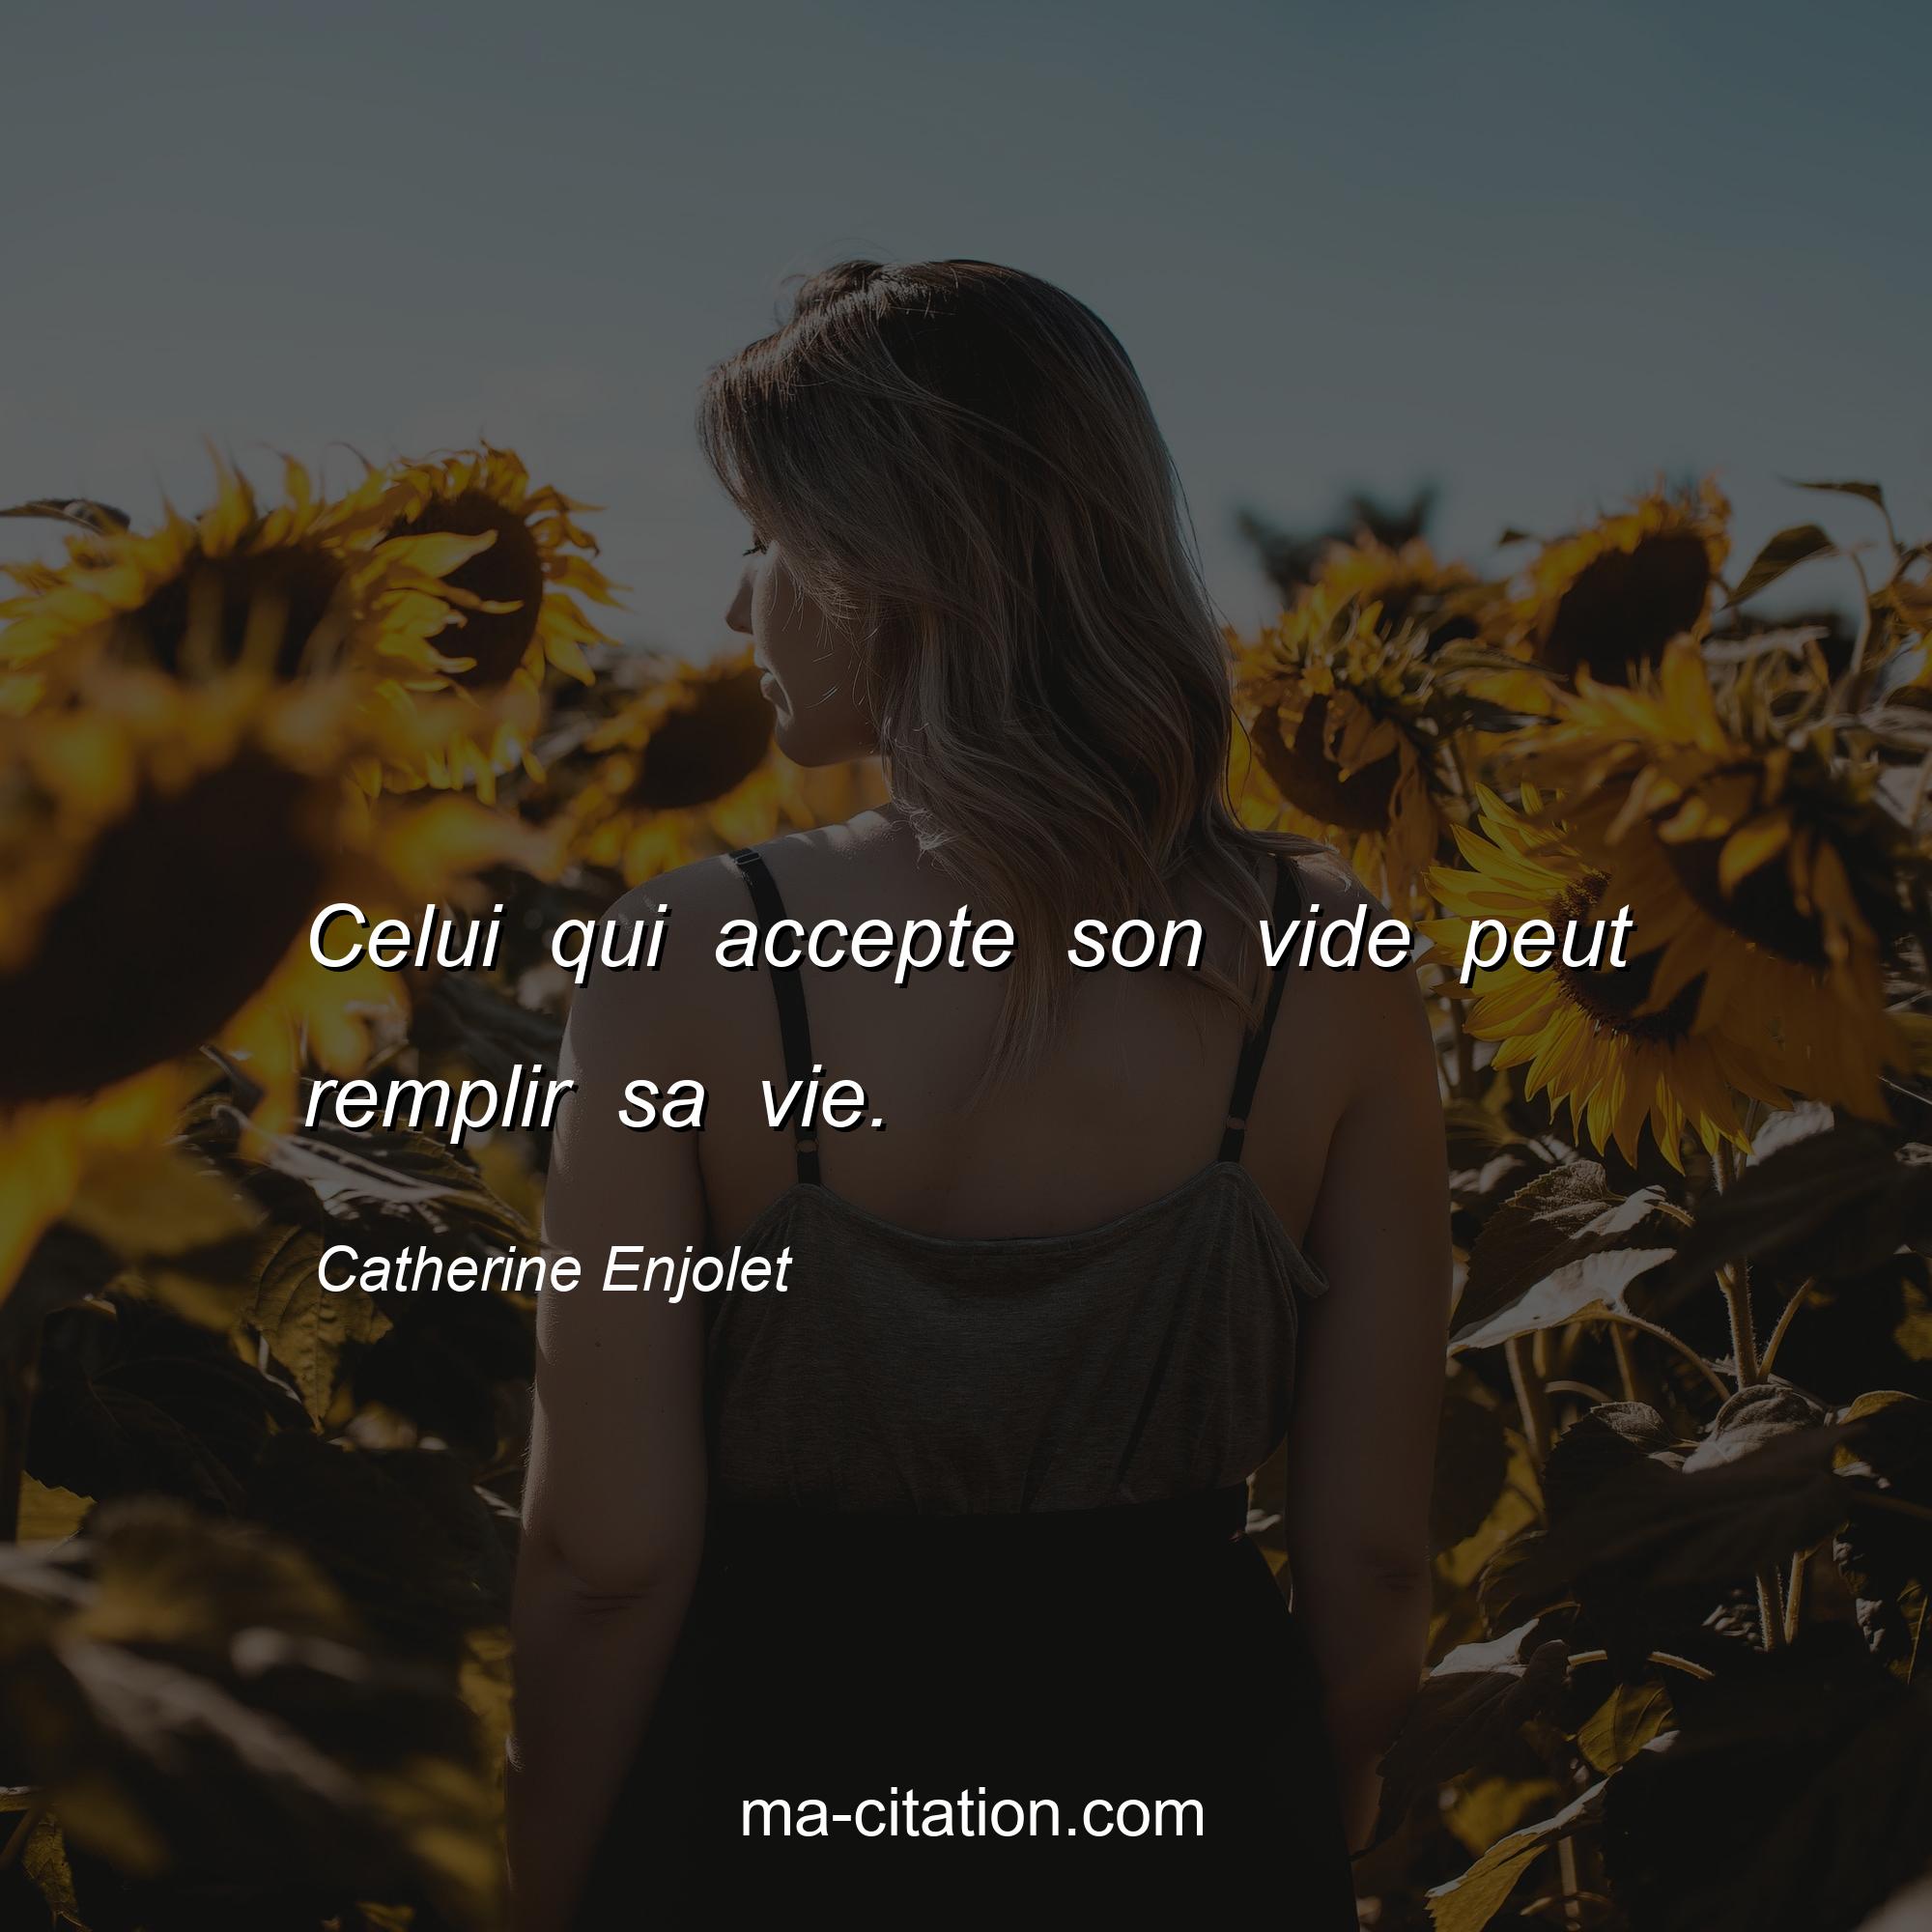 Catherine Enjolet : Celui qui accepte son vide peut remplir sa vie.